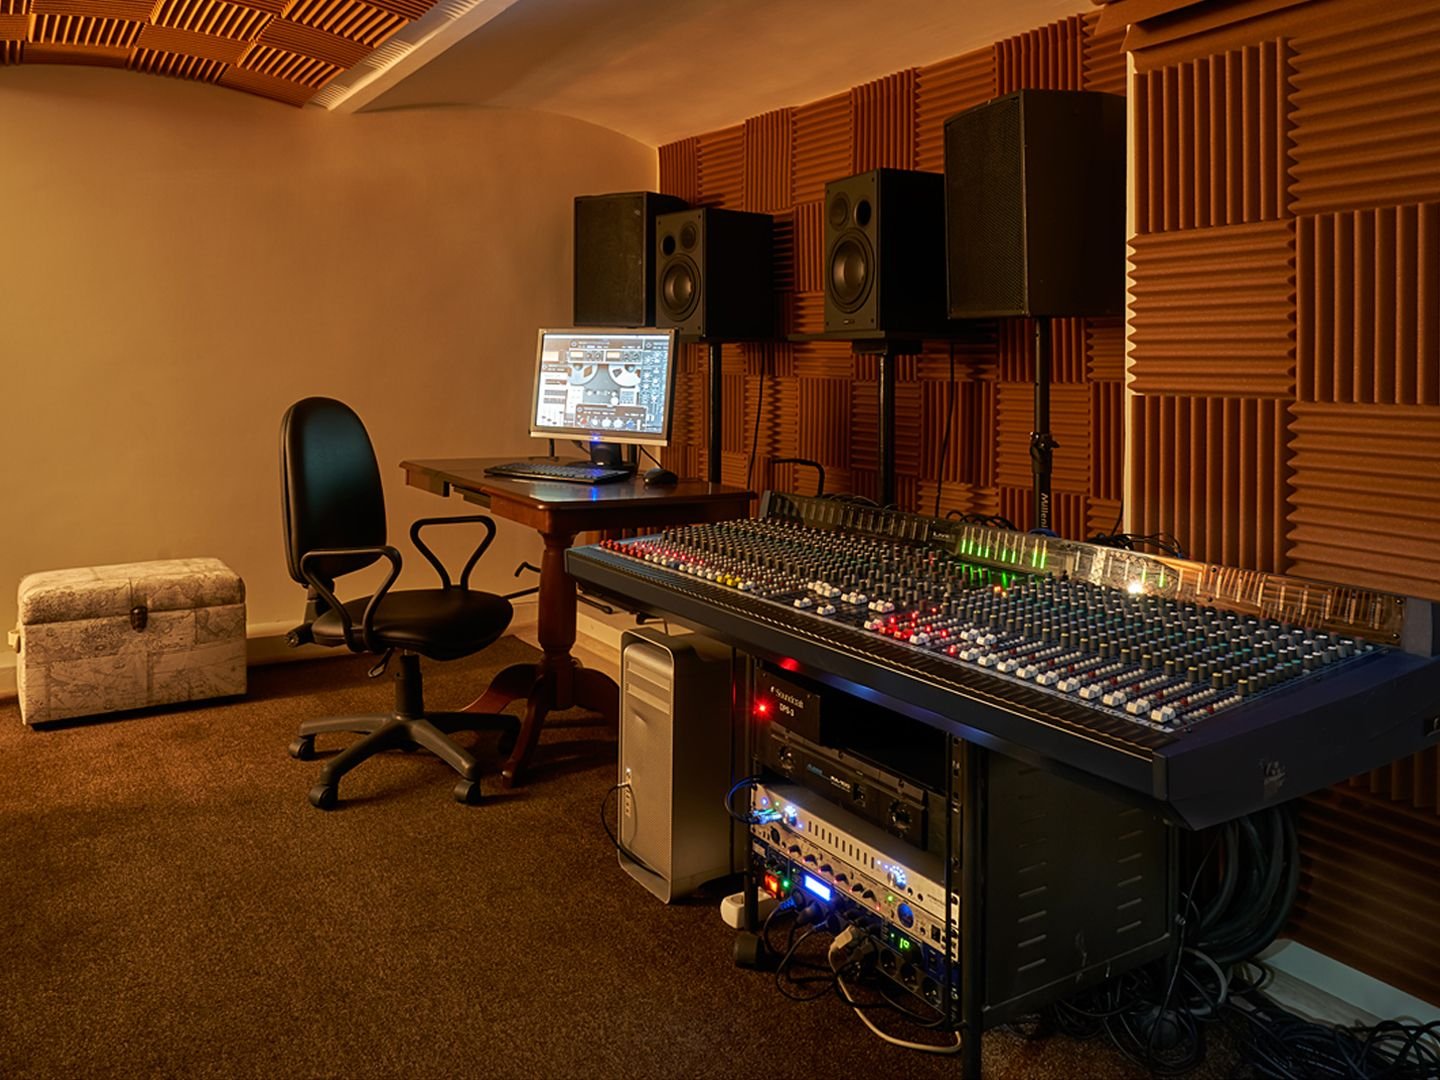 Купить хорошую студию. Студия звукозаписи. Звукозаписывающая студия. Оборудование для студии звукозаписи. Студия записи.